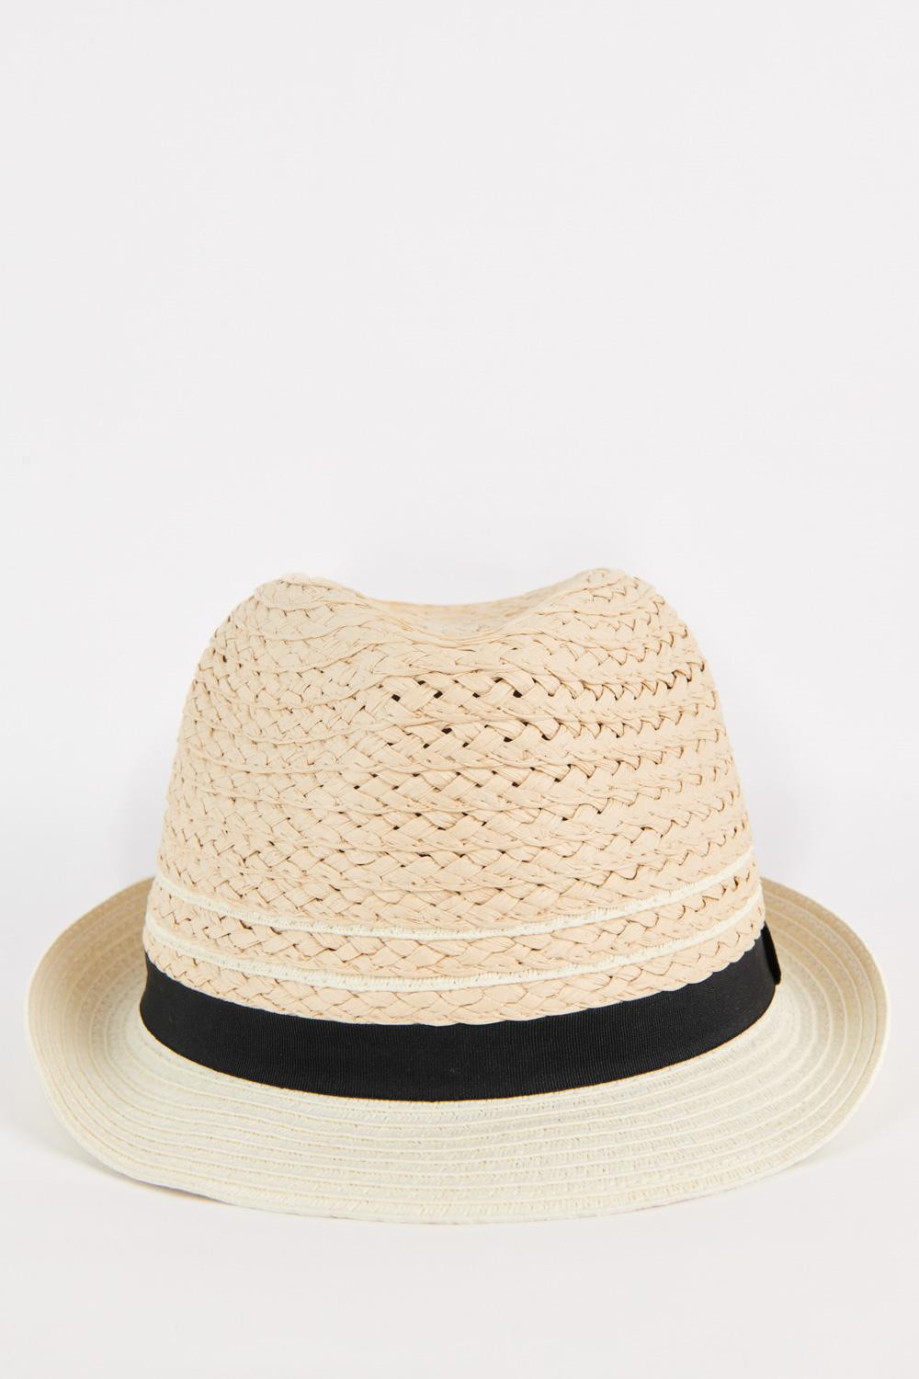 Sombrero Panamá kaky claro de paja con ala en contraste